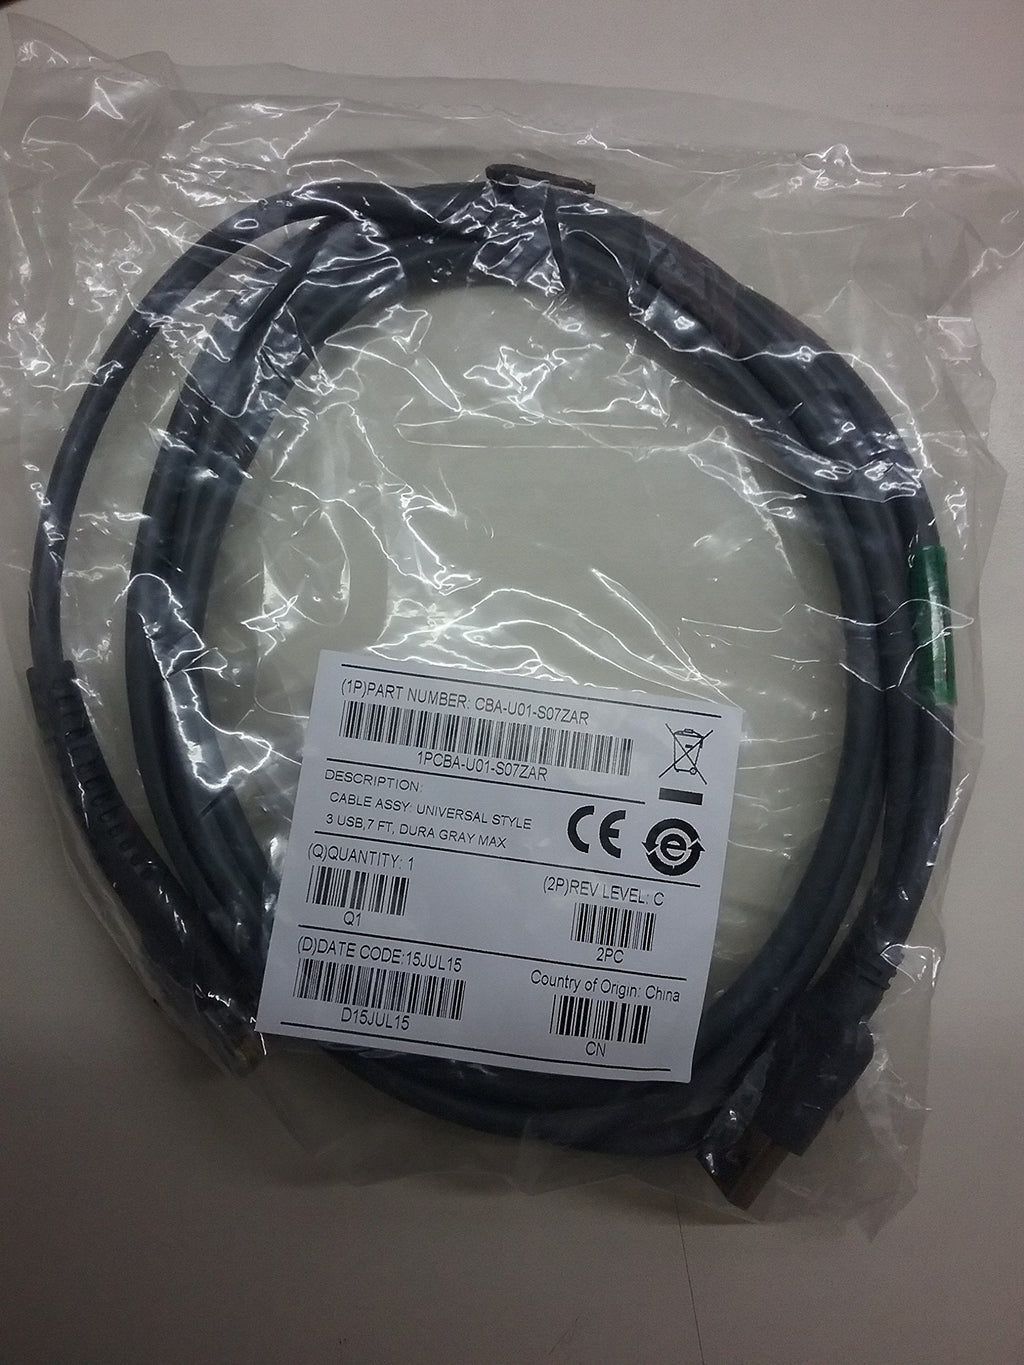  [AUSTRALIA] - Symbol LS2208 USB Cable